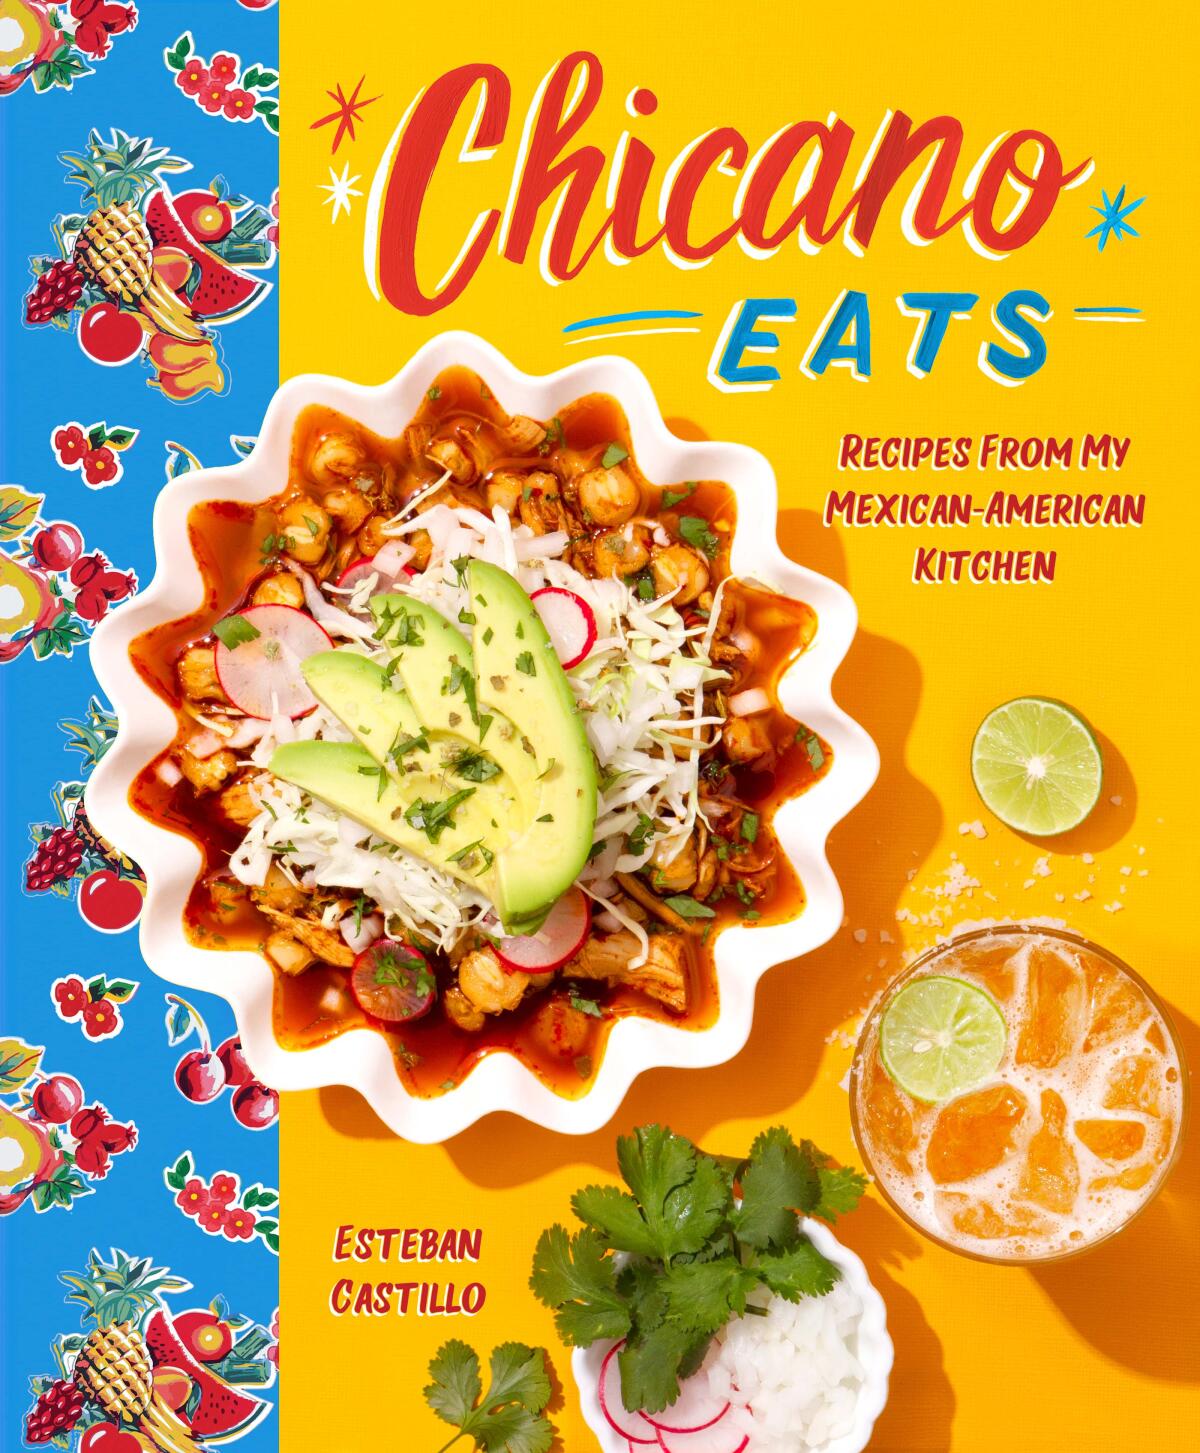 The cover of Esteban Castillo's vibrant new cookbook "Chicano Eats."